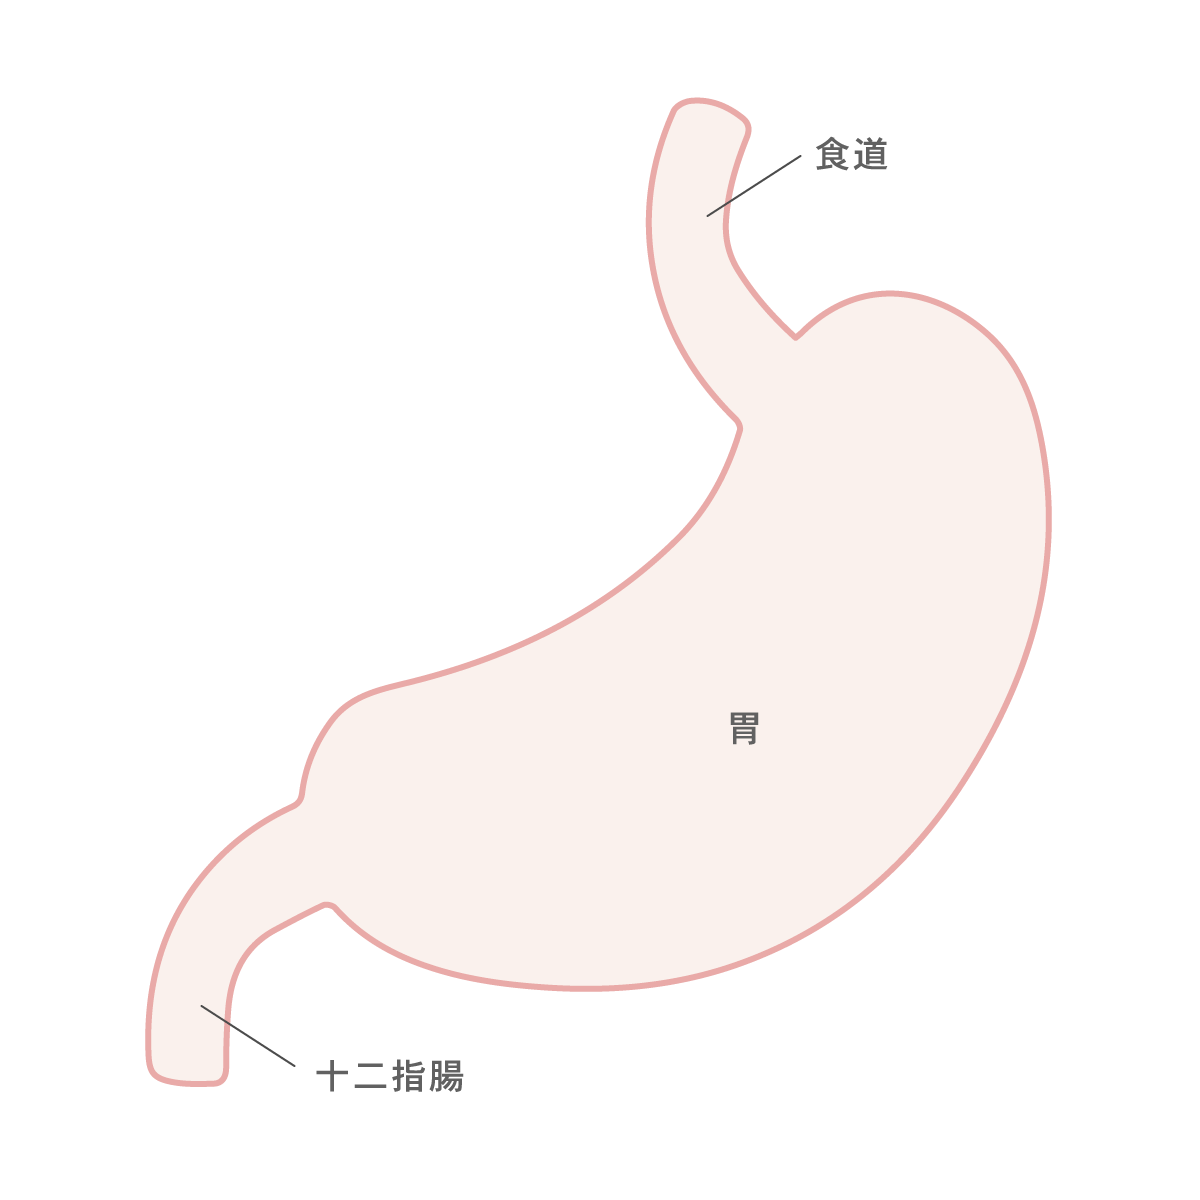 大腸